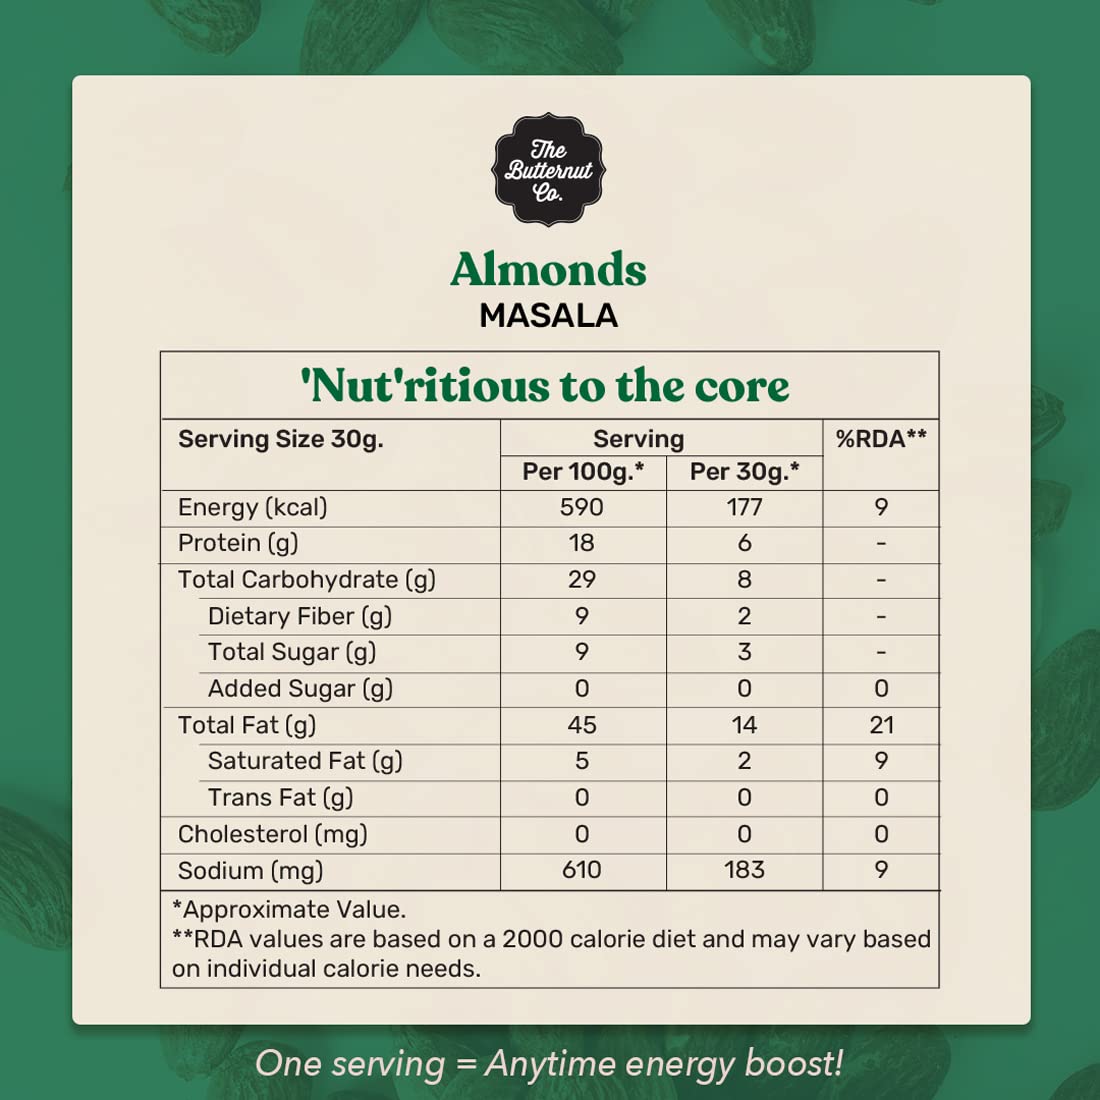 The Butternut Co. Almonds Masala - 250g | 100% Natural | High Protein & Fibre | Gluten Free | Vegan